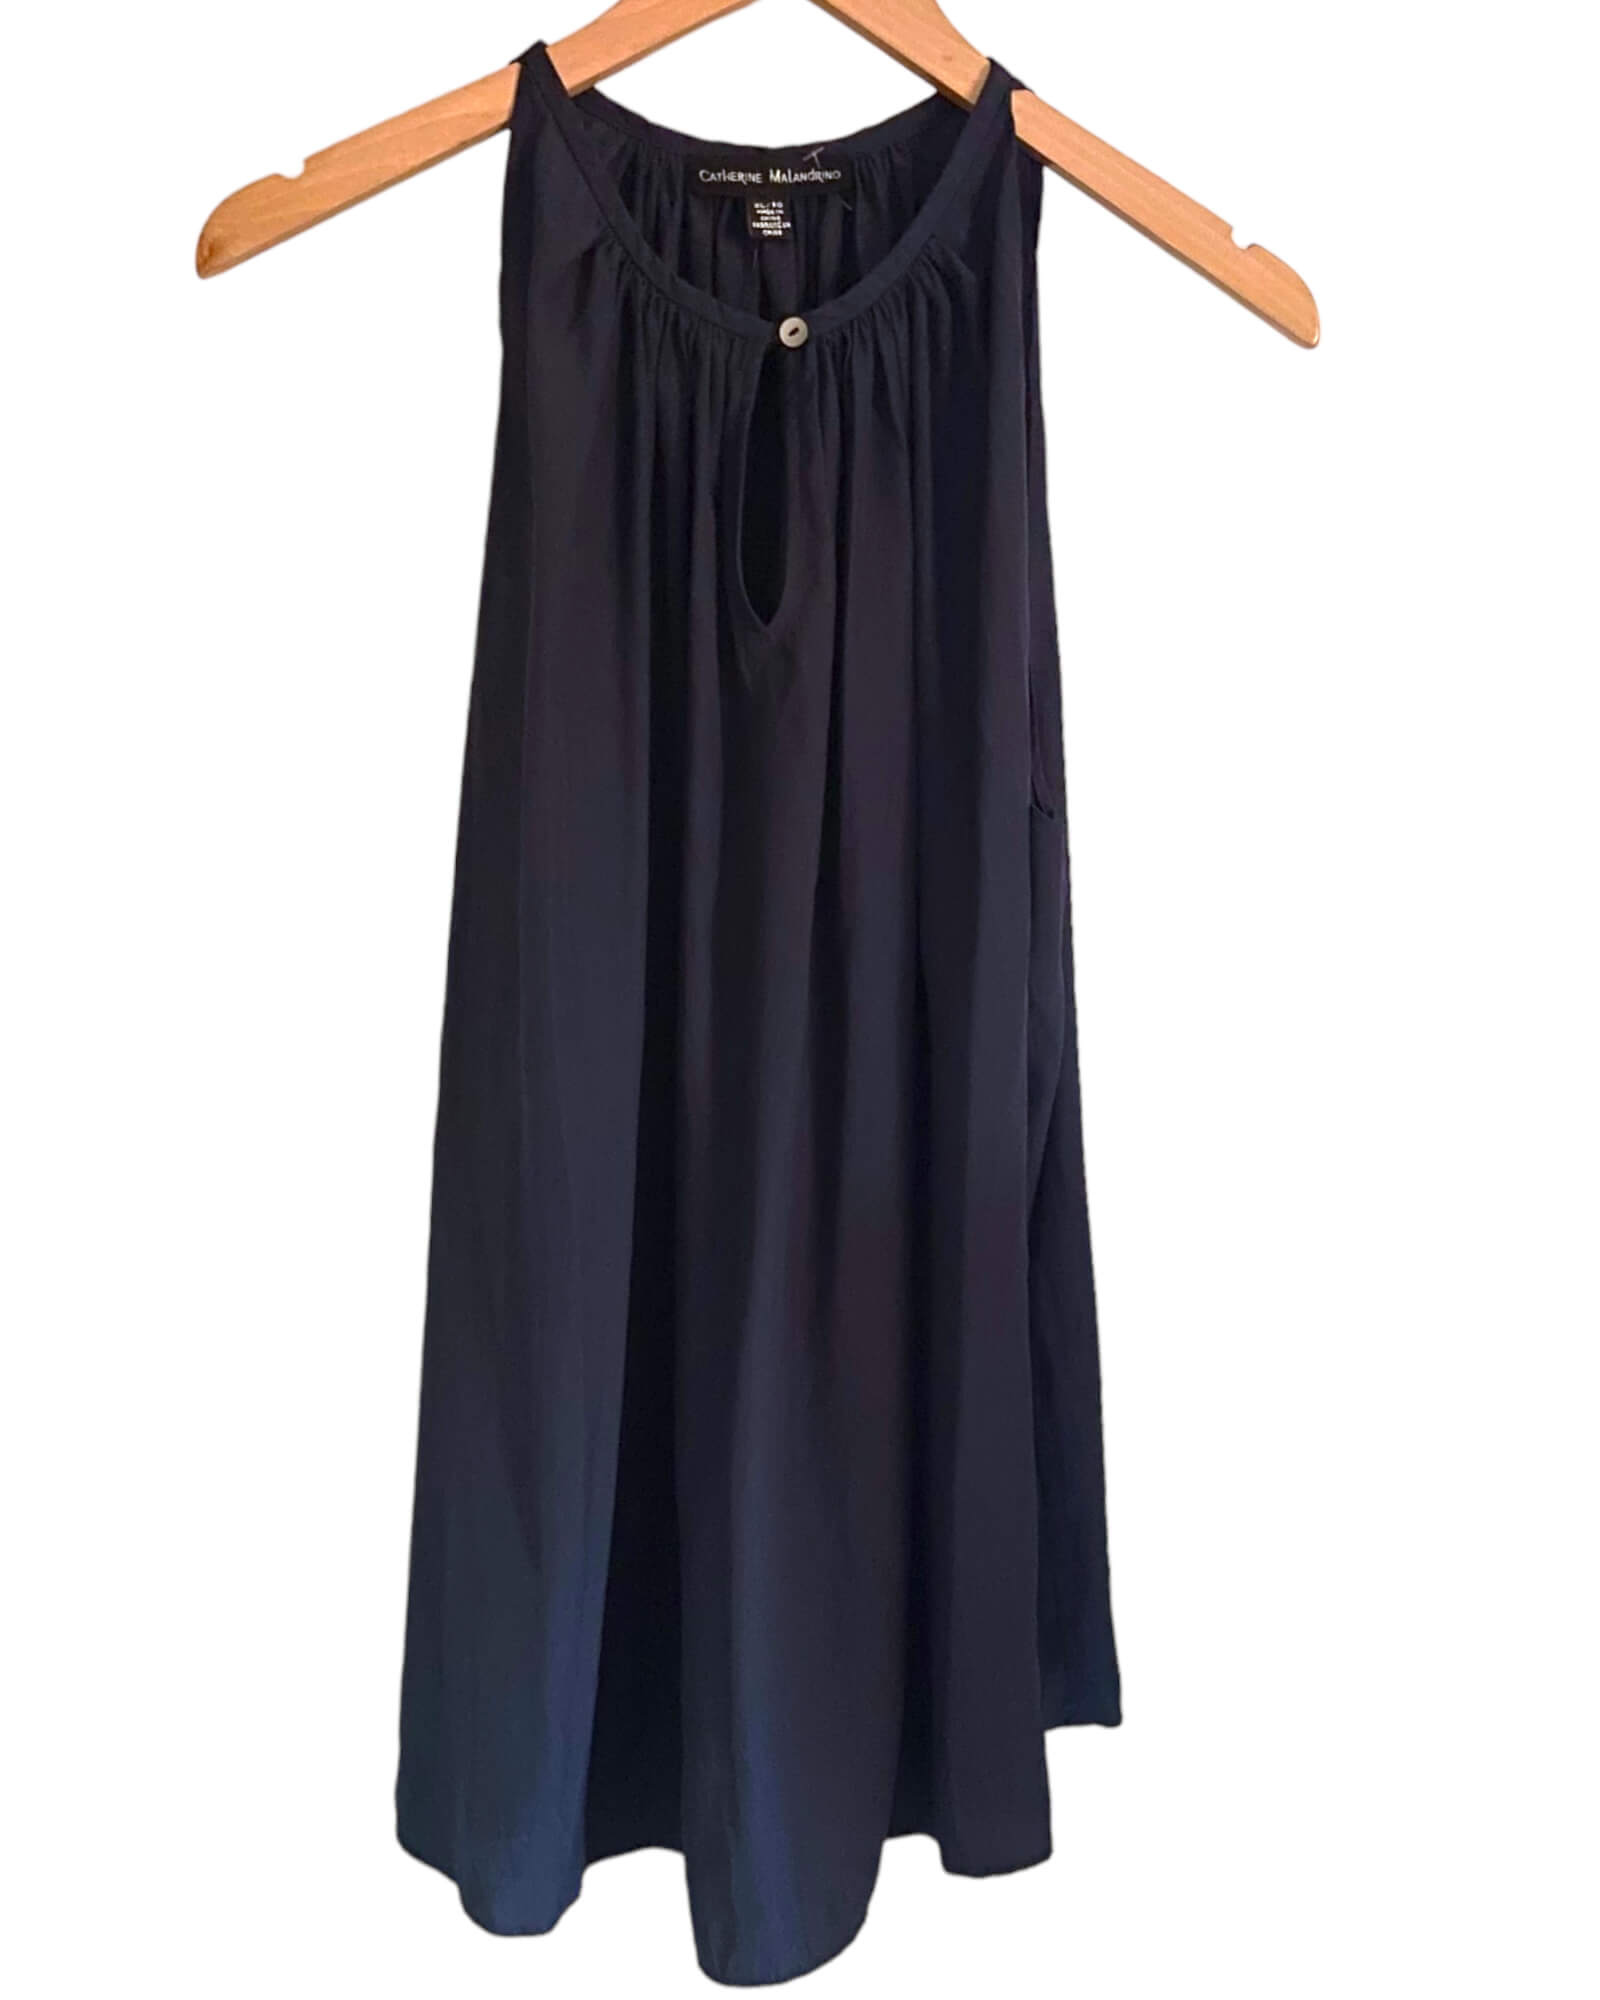 Dark Autumn CATHERINE MALANDRINO navy blue sleeveless swing blouse top